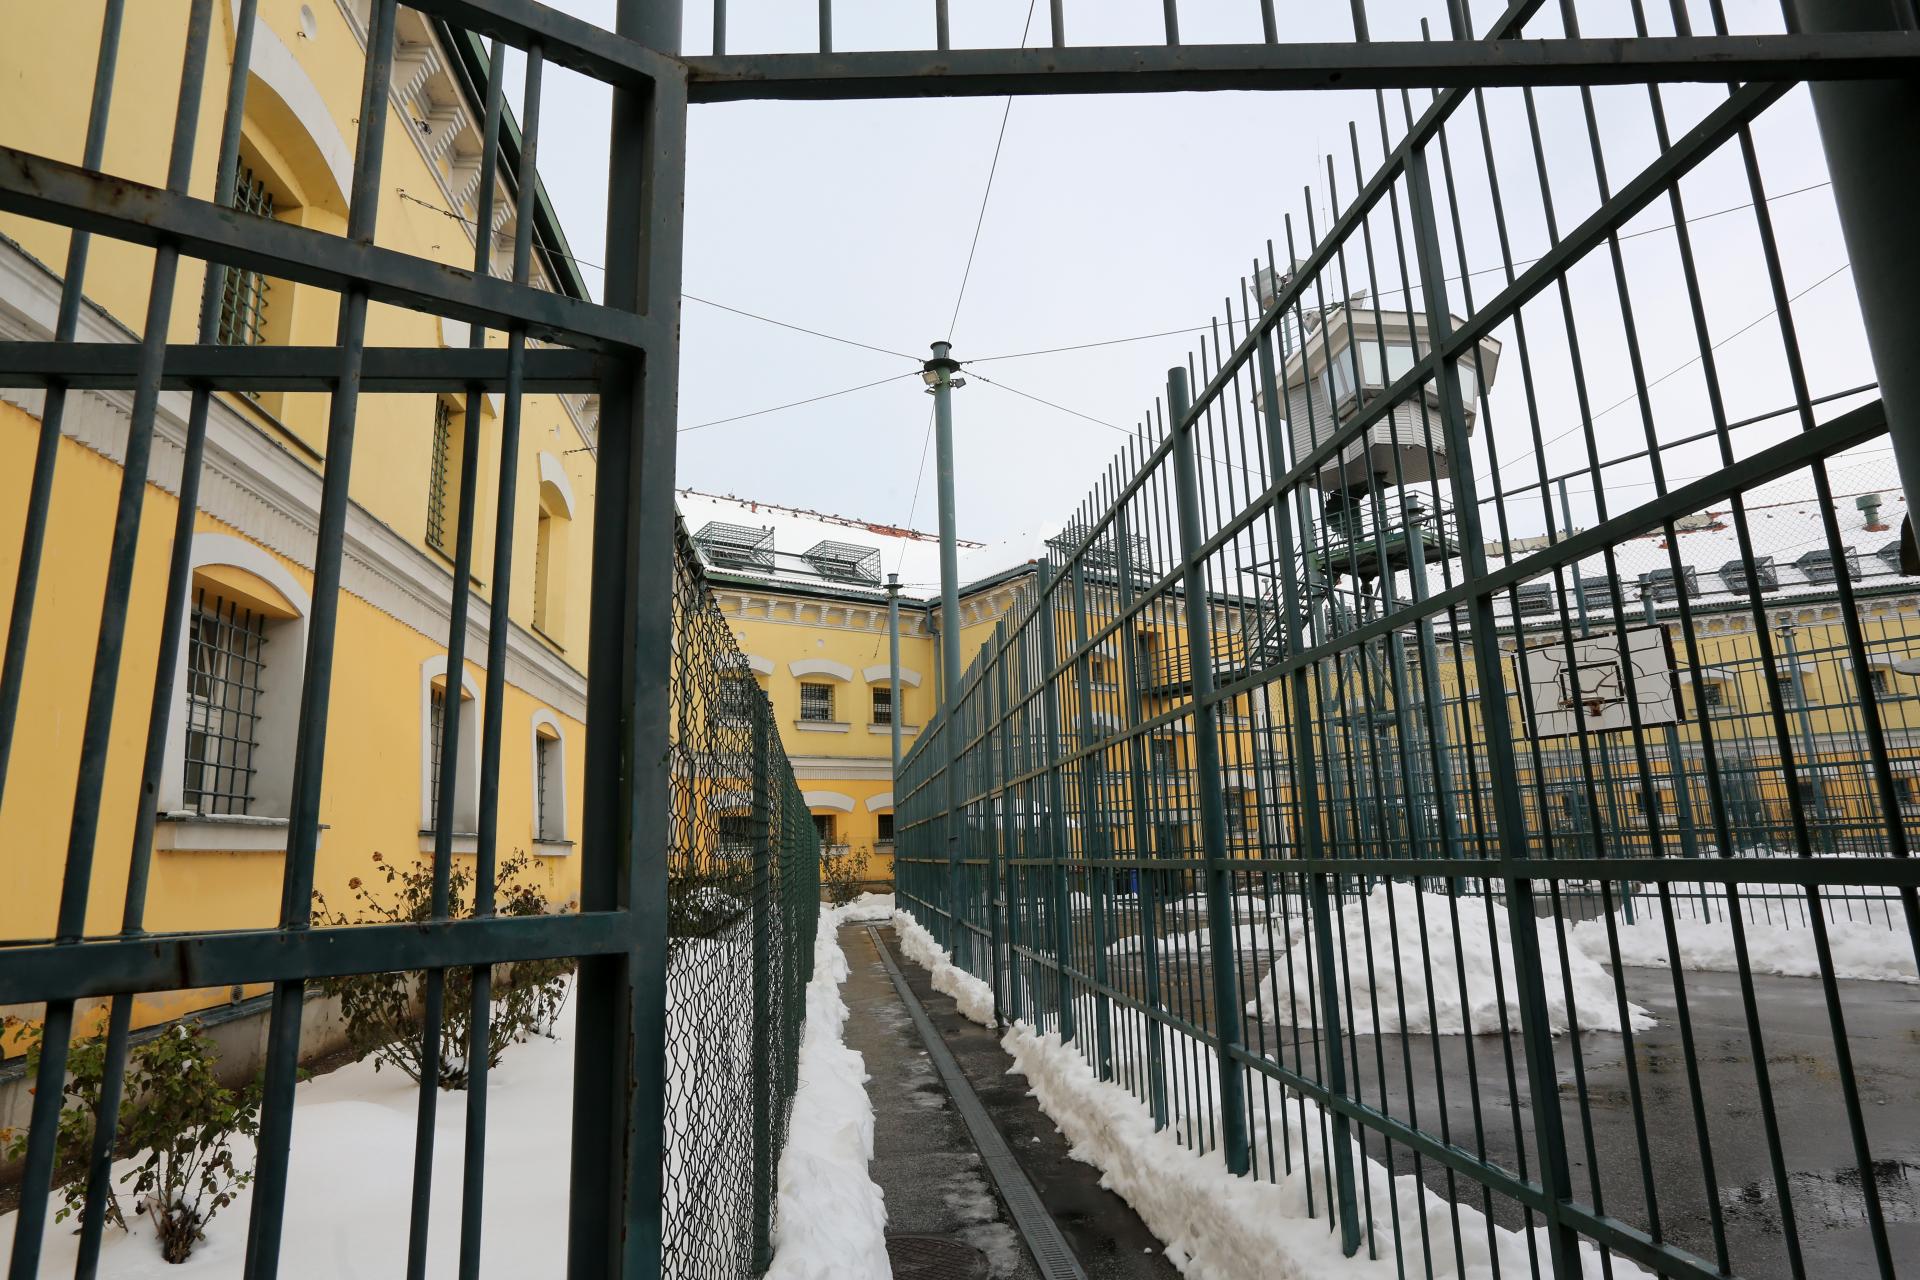 Vo väznici v Leopoldove mal pes identifikovať výbušniny v balíkoch. Pyrotechnik hrozbu nepotvrdil